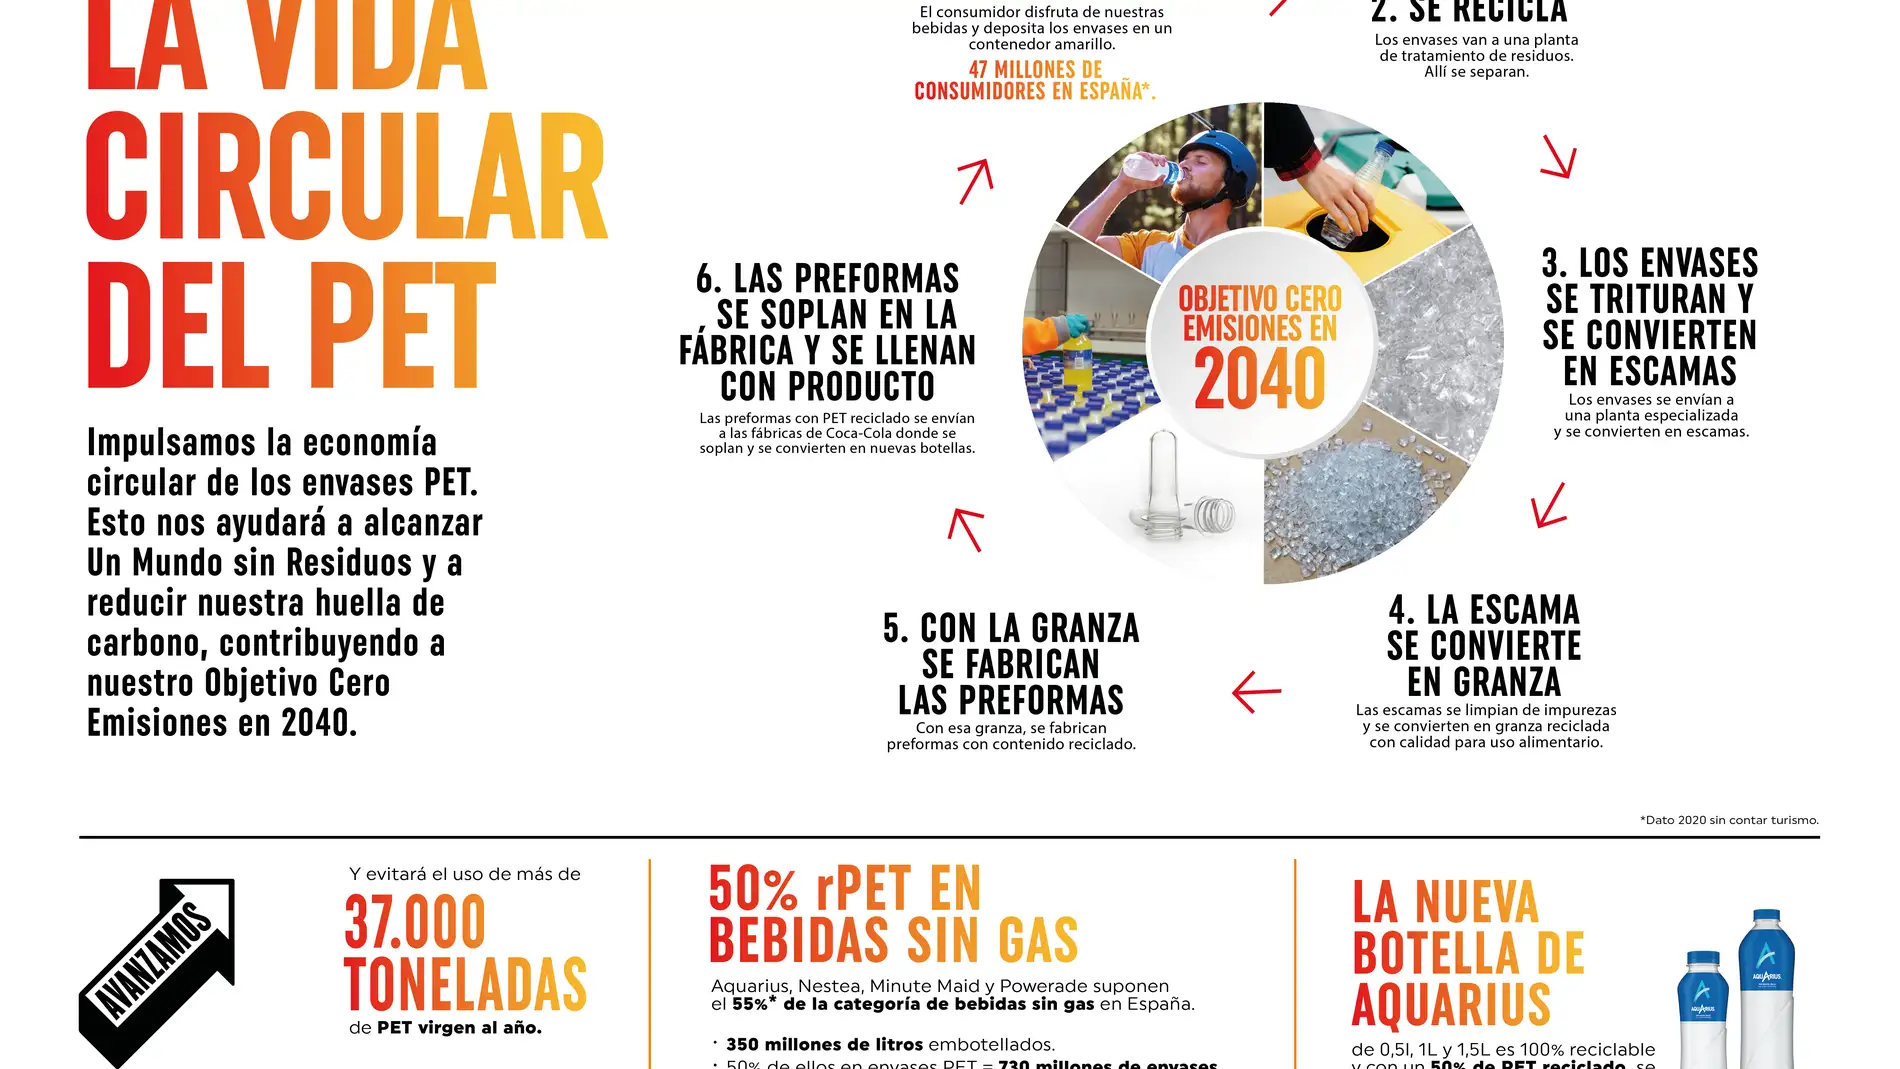 COCA-COLA ALCANZA EL 50% DE PET RECICLADO EN LOS ENVASES DE SUS BEBIDAS SIN GAS 